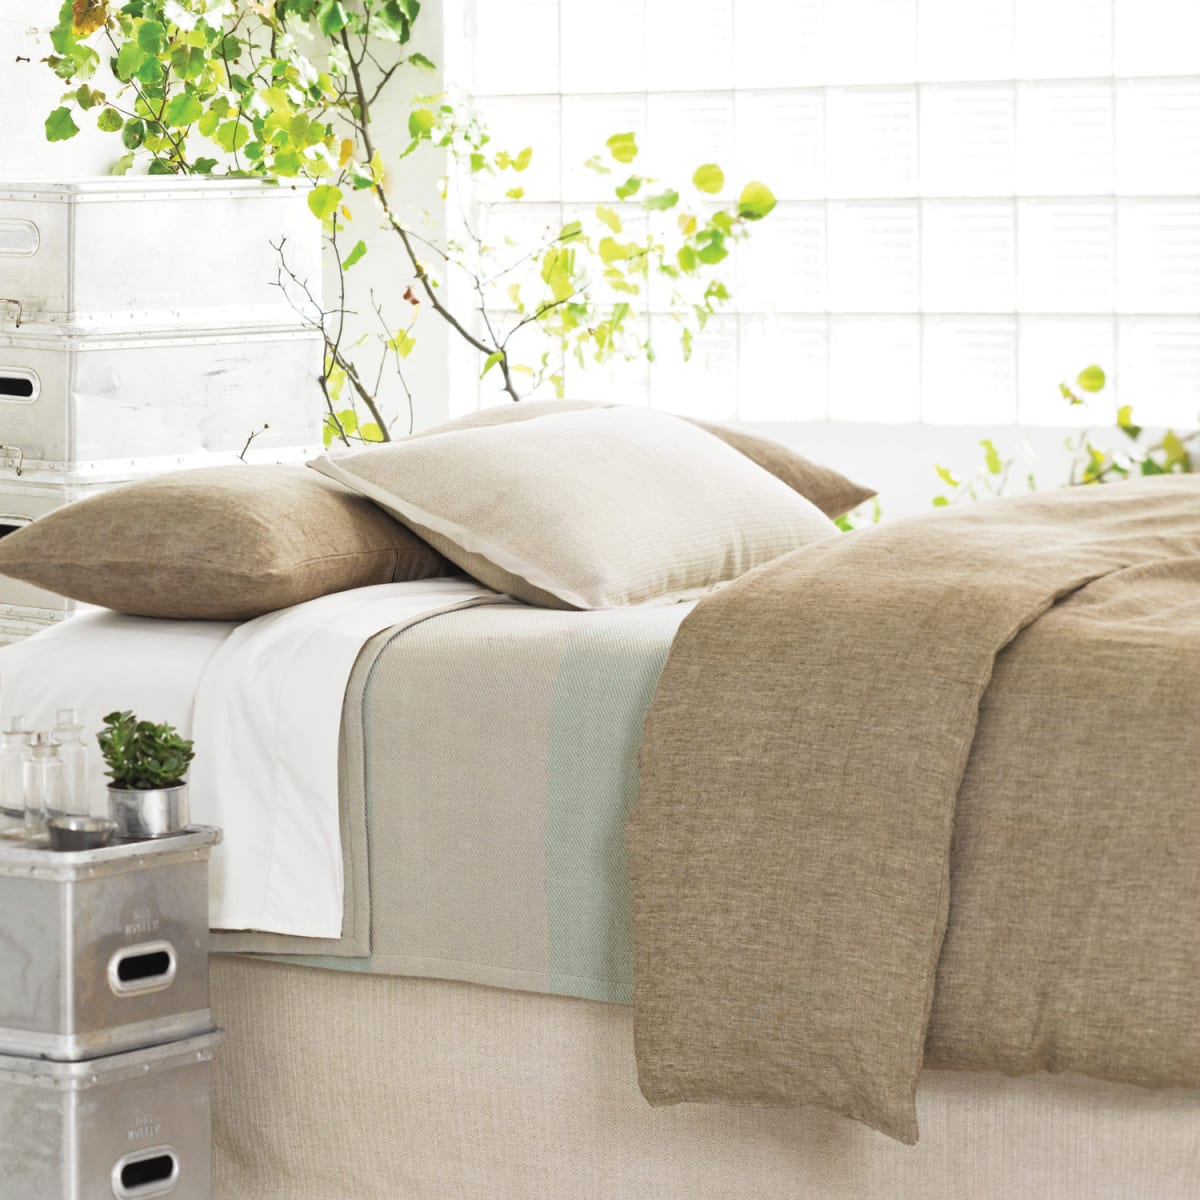 Bedding (e.g. pillows, sheets, comforter, etc.)